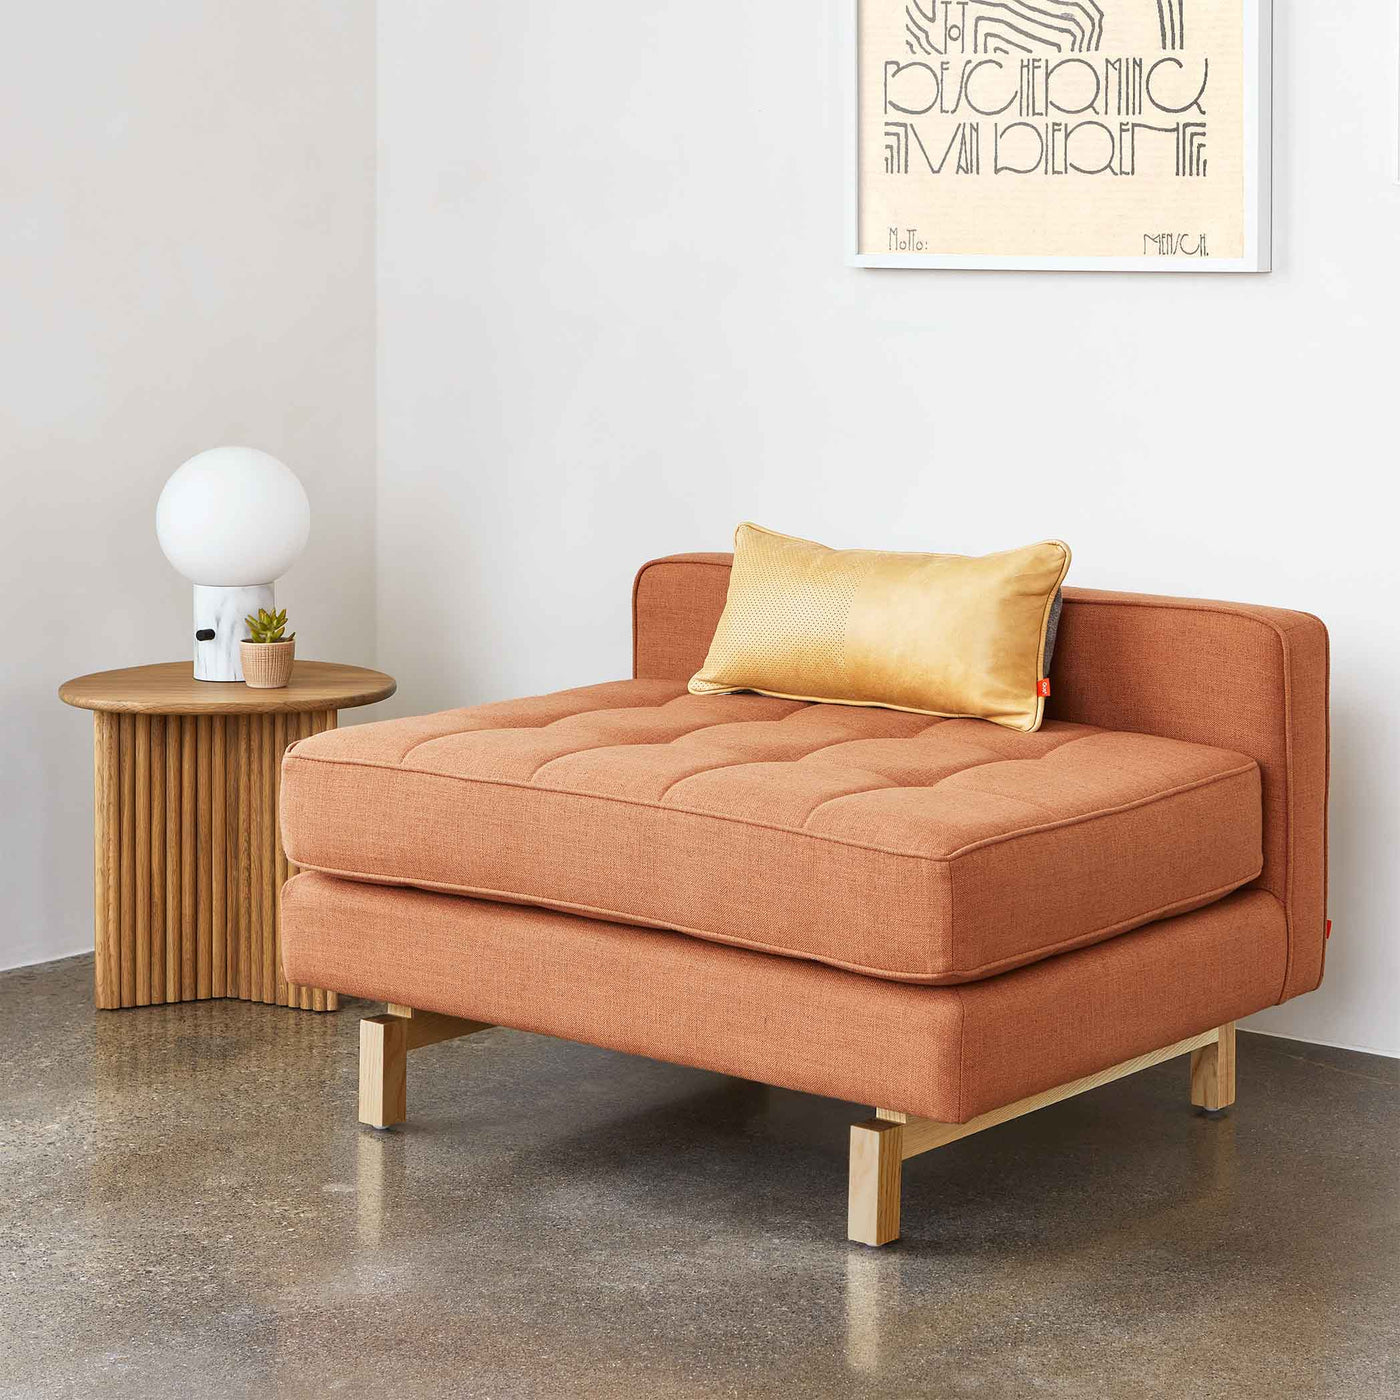 Jane 2 Lounge de Gus* Modern : une interprétation moderne du style Mid-century, configuré avec le sofa pour former un sofa bi-sectionnel polyvalent.